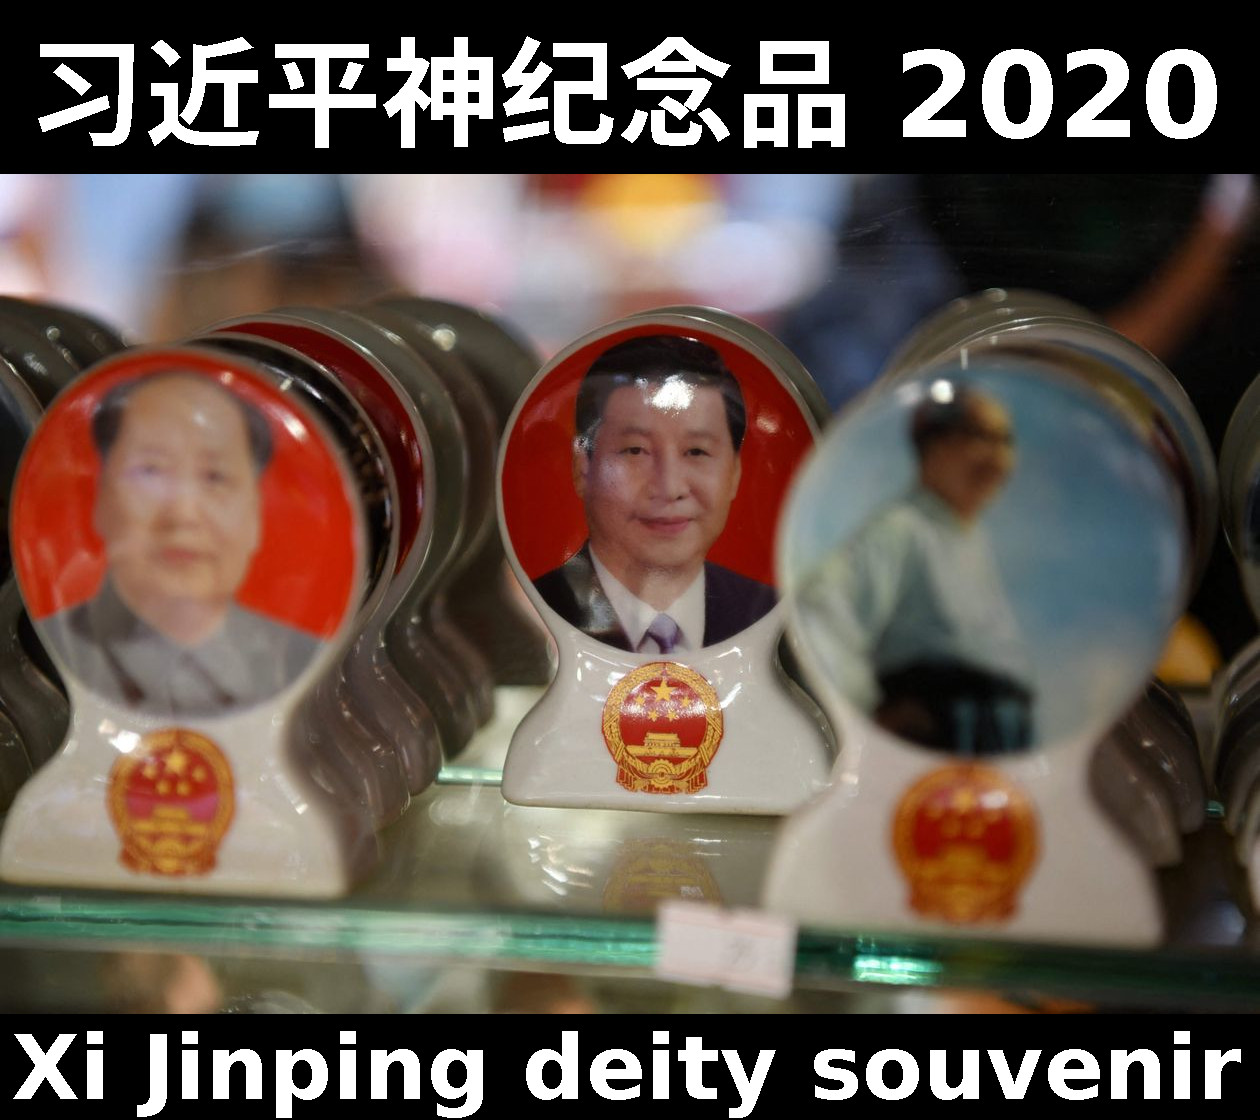 Xi Jinping Mao Zedong sculpture souvenirs